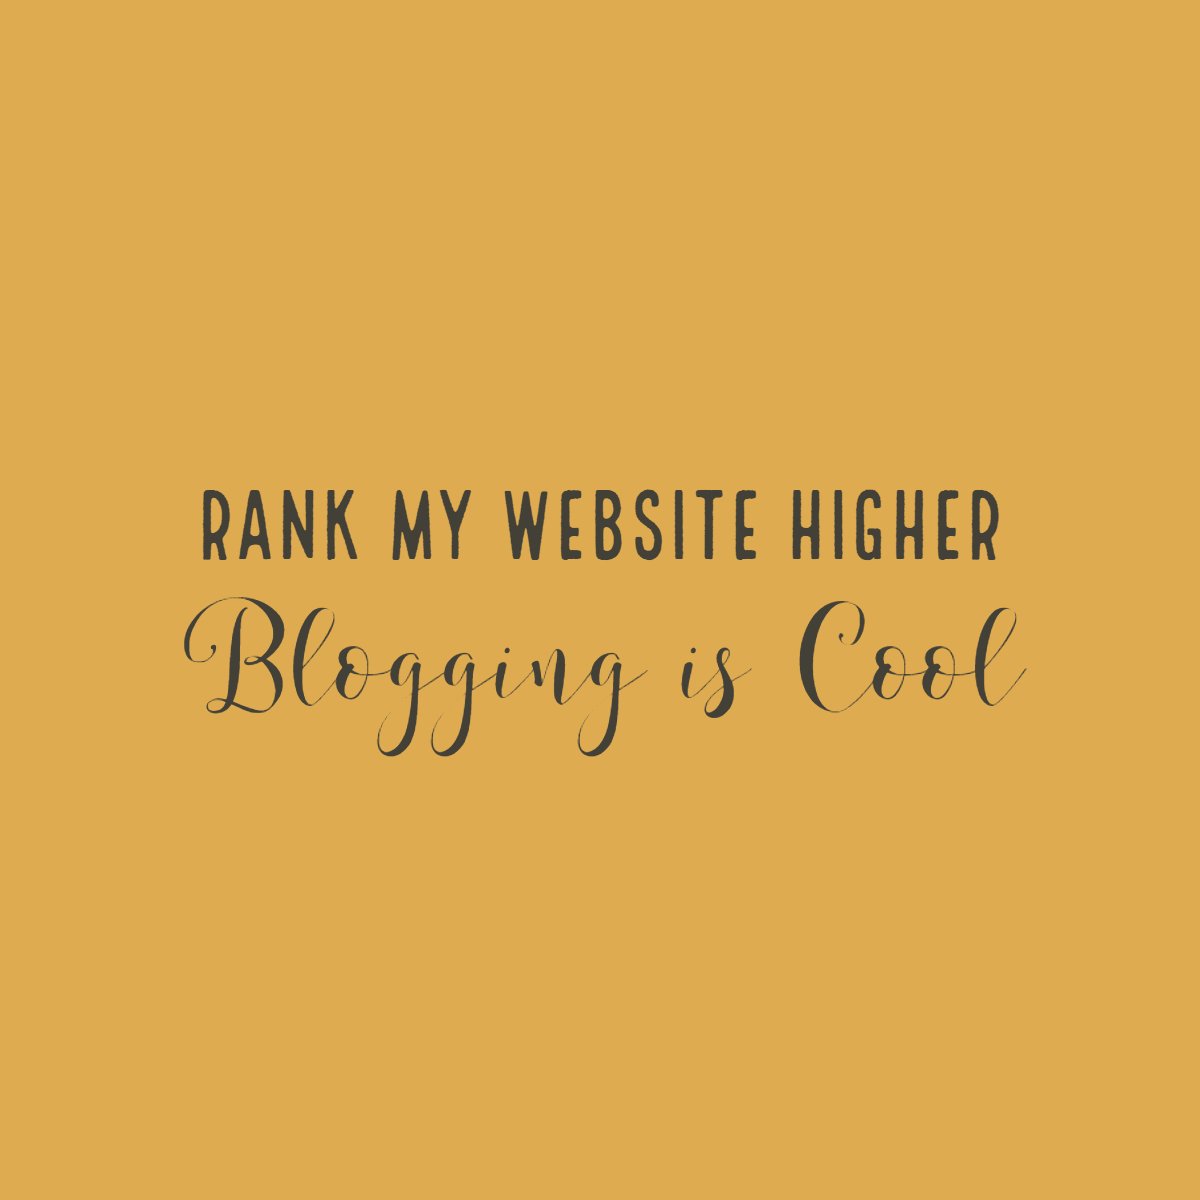 bloggingiscool.com indexing your blogs